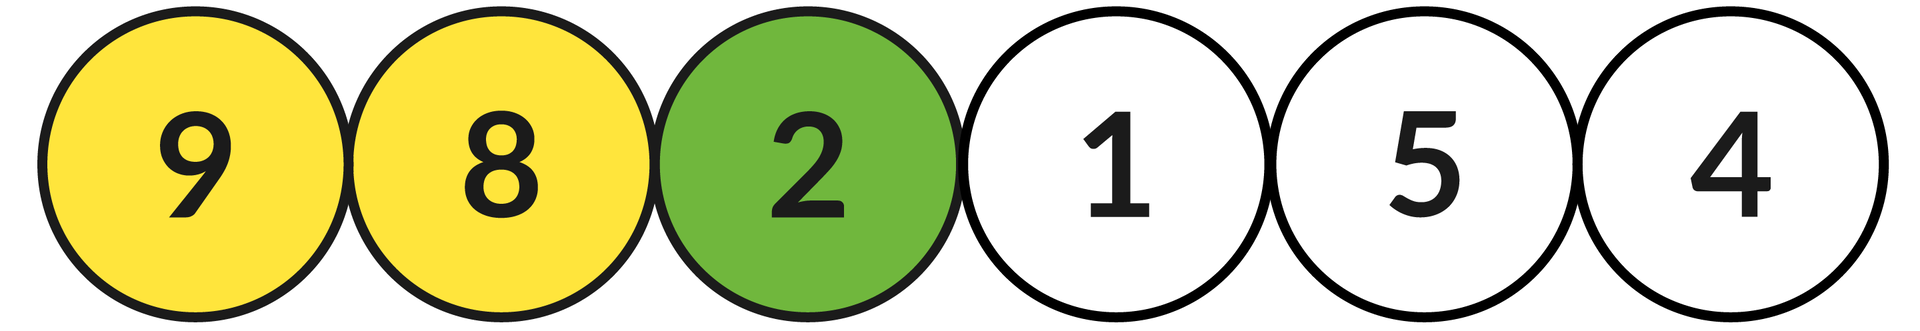 Ilustracja przedstawia sześć okręgów z liczbami: 9, 8, 2, 1, 5, 4.  Zielonym kolorem zaznaczono okrąg z liczbą: 2, a kolorem żółtym z liczbami: 9 oraz 8.